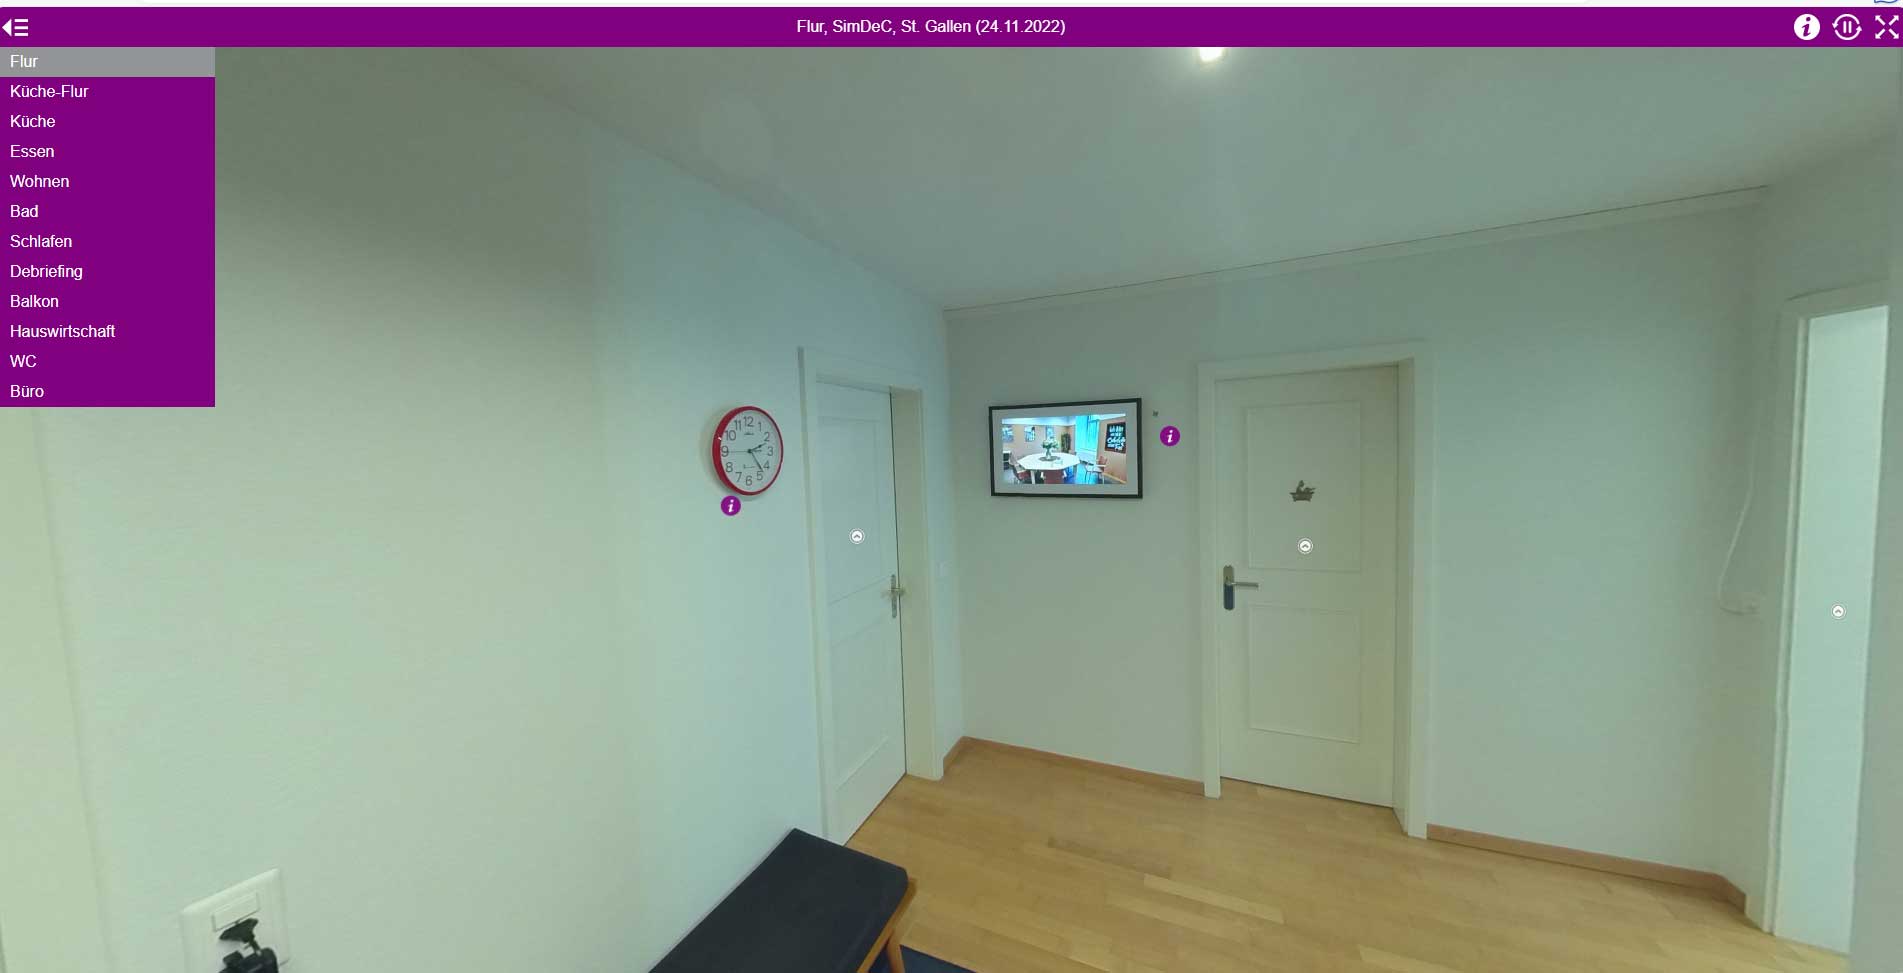 Virtueller Besuch der SimDec-Wohnung